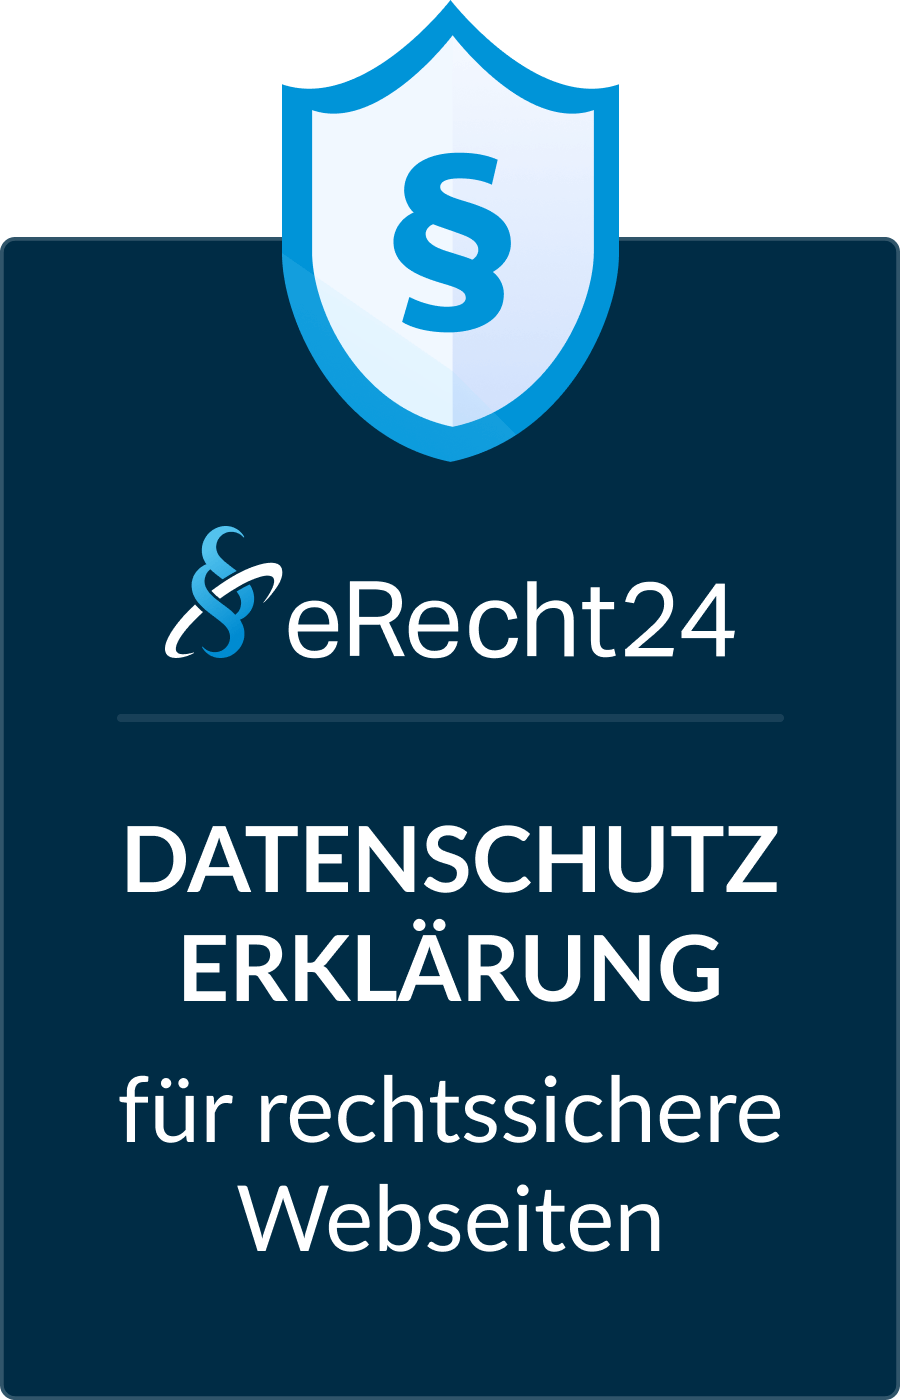 eRecht 24 Siegel für eine Datenschutzerklärung für rechtssichere Webseiten